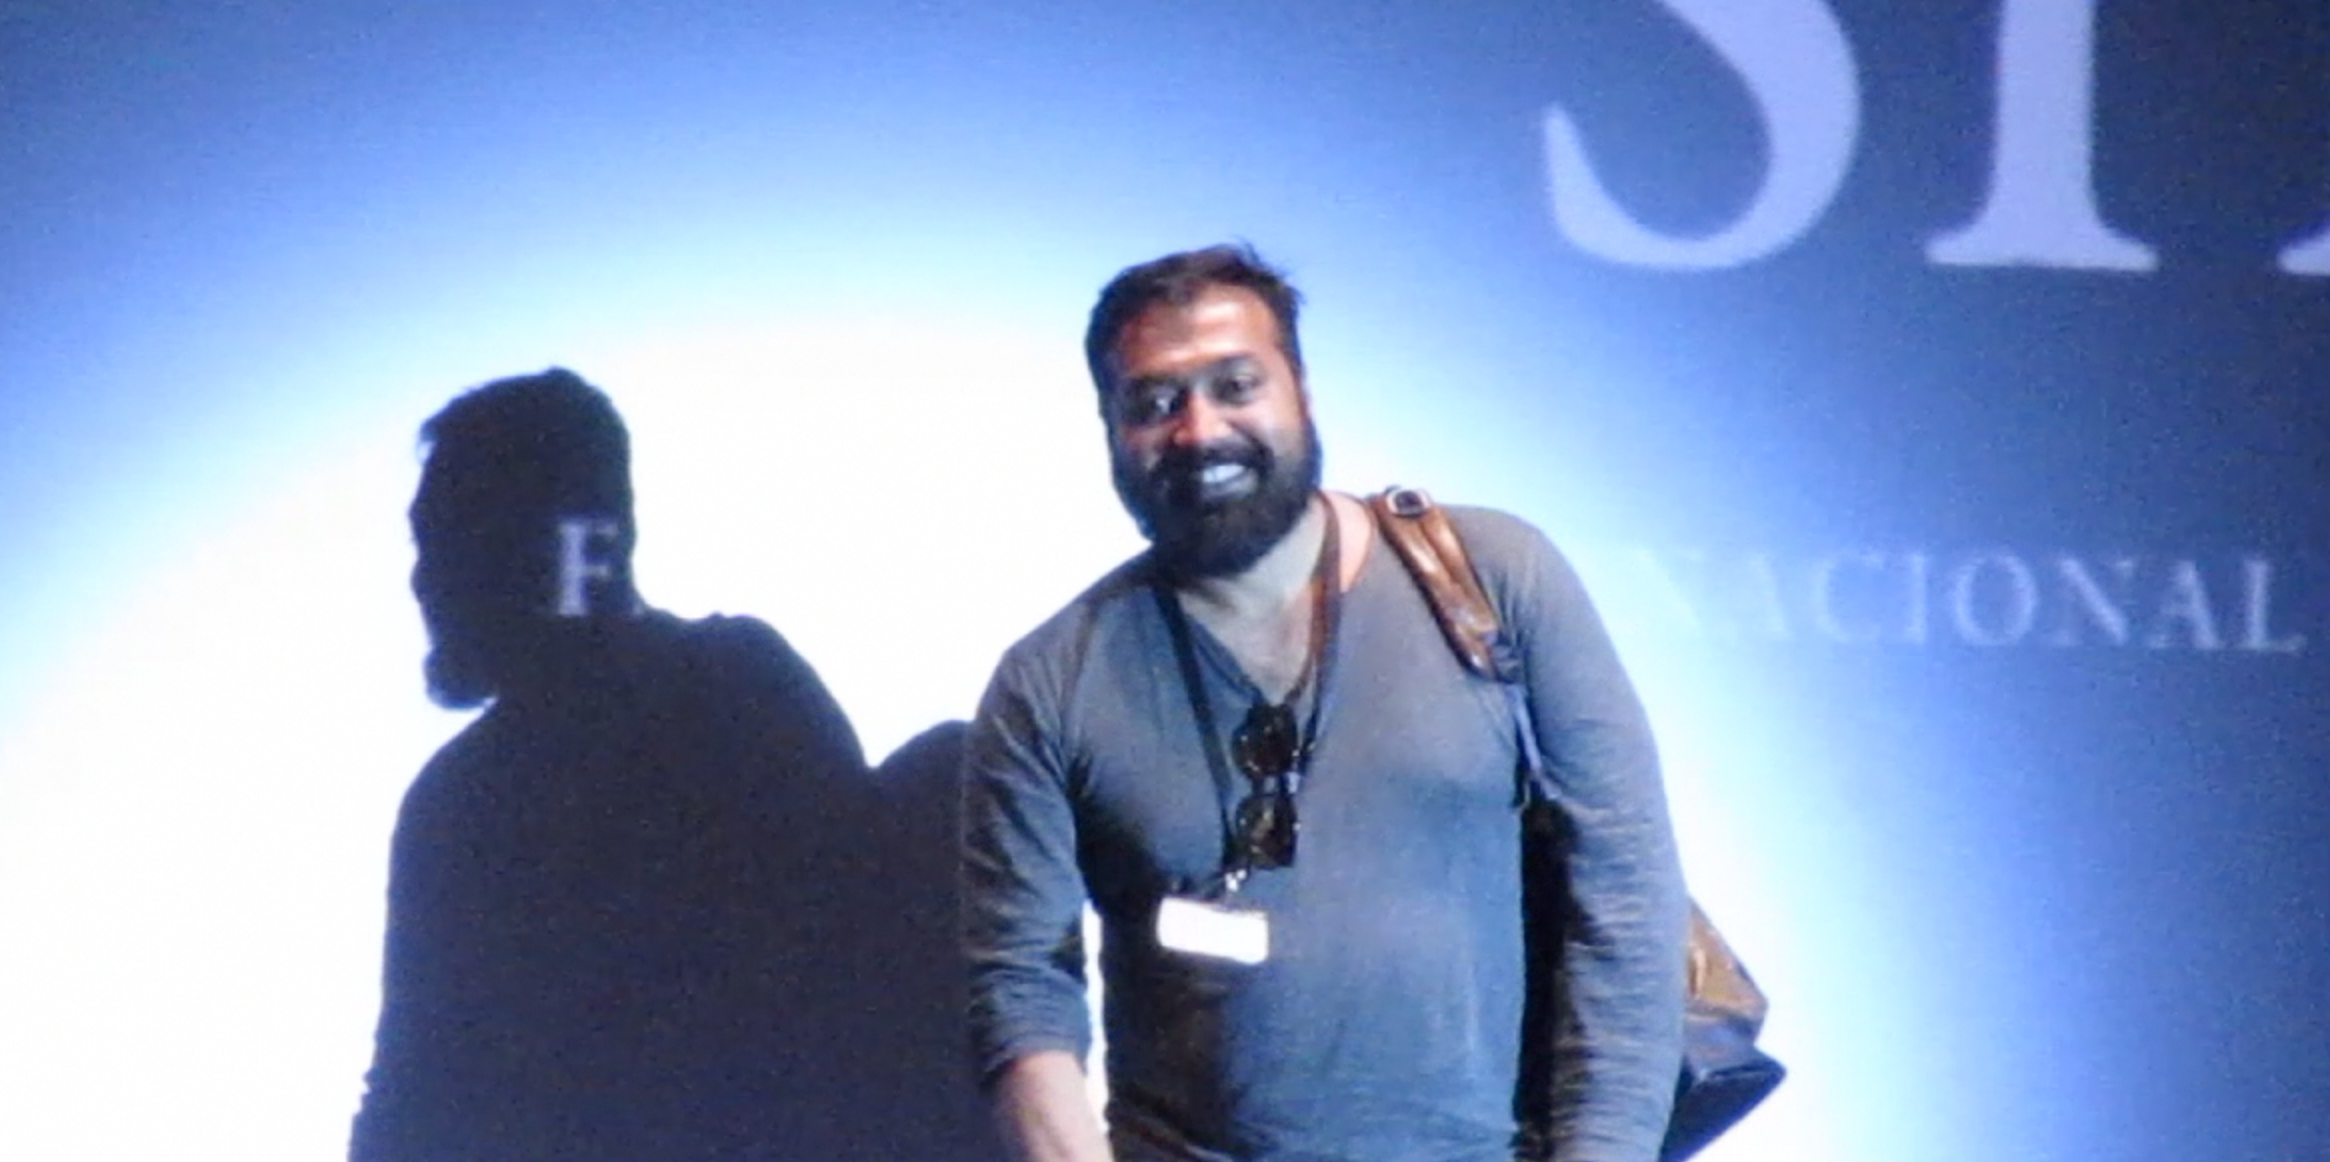 Presentación Raman Raghav 2.0 por el director Anurag Kashyap en Sitges Film Festival 2106